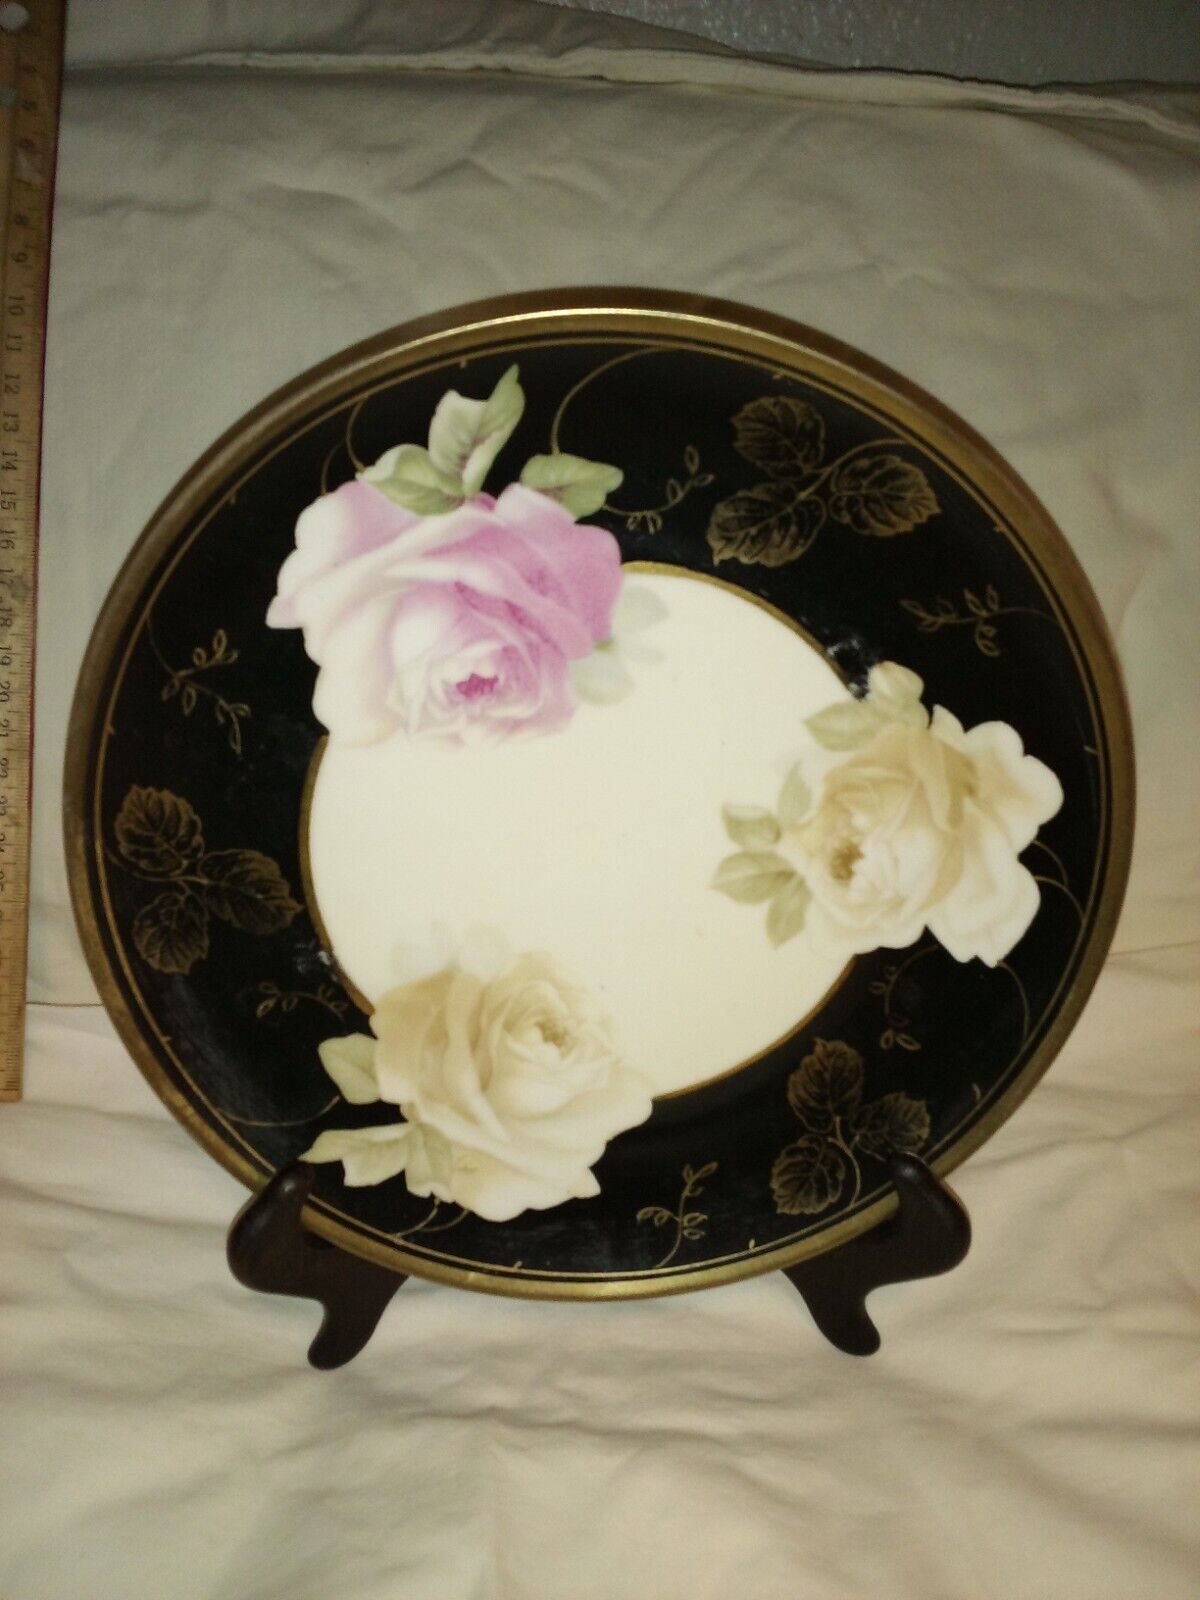 porcelain antique royal munich germany black art plate dish art nouveau roses